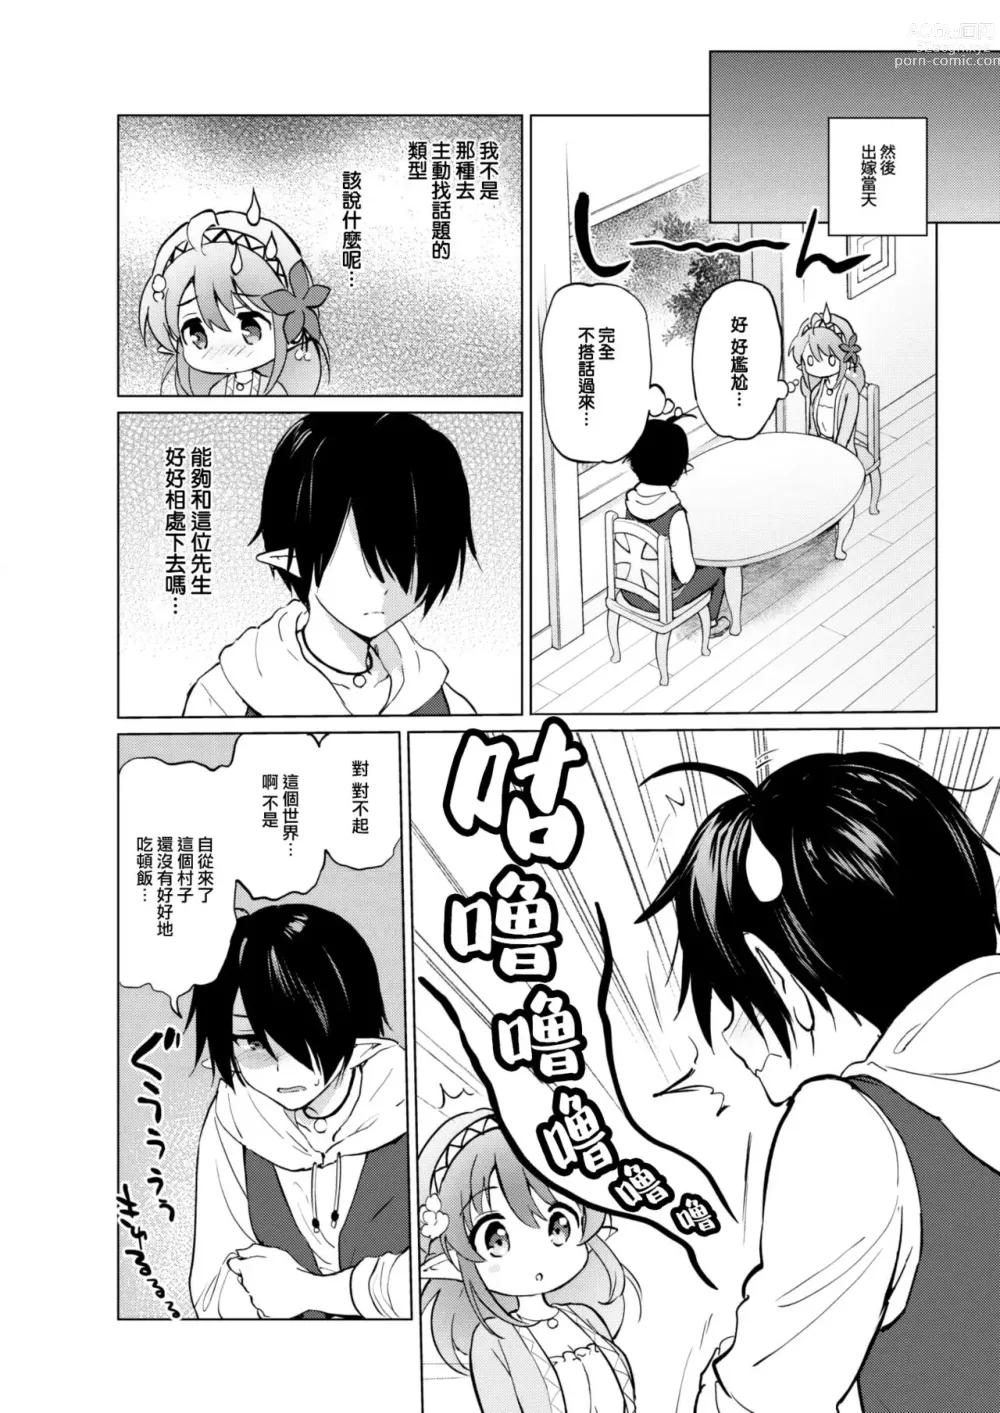 Page 8 of manga Elf yome no iru kurashi Sono 0.5 ~ Haru matsu tsubomi ~